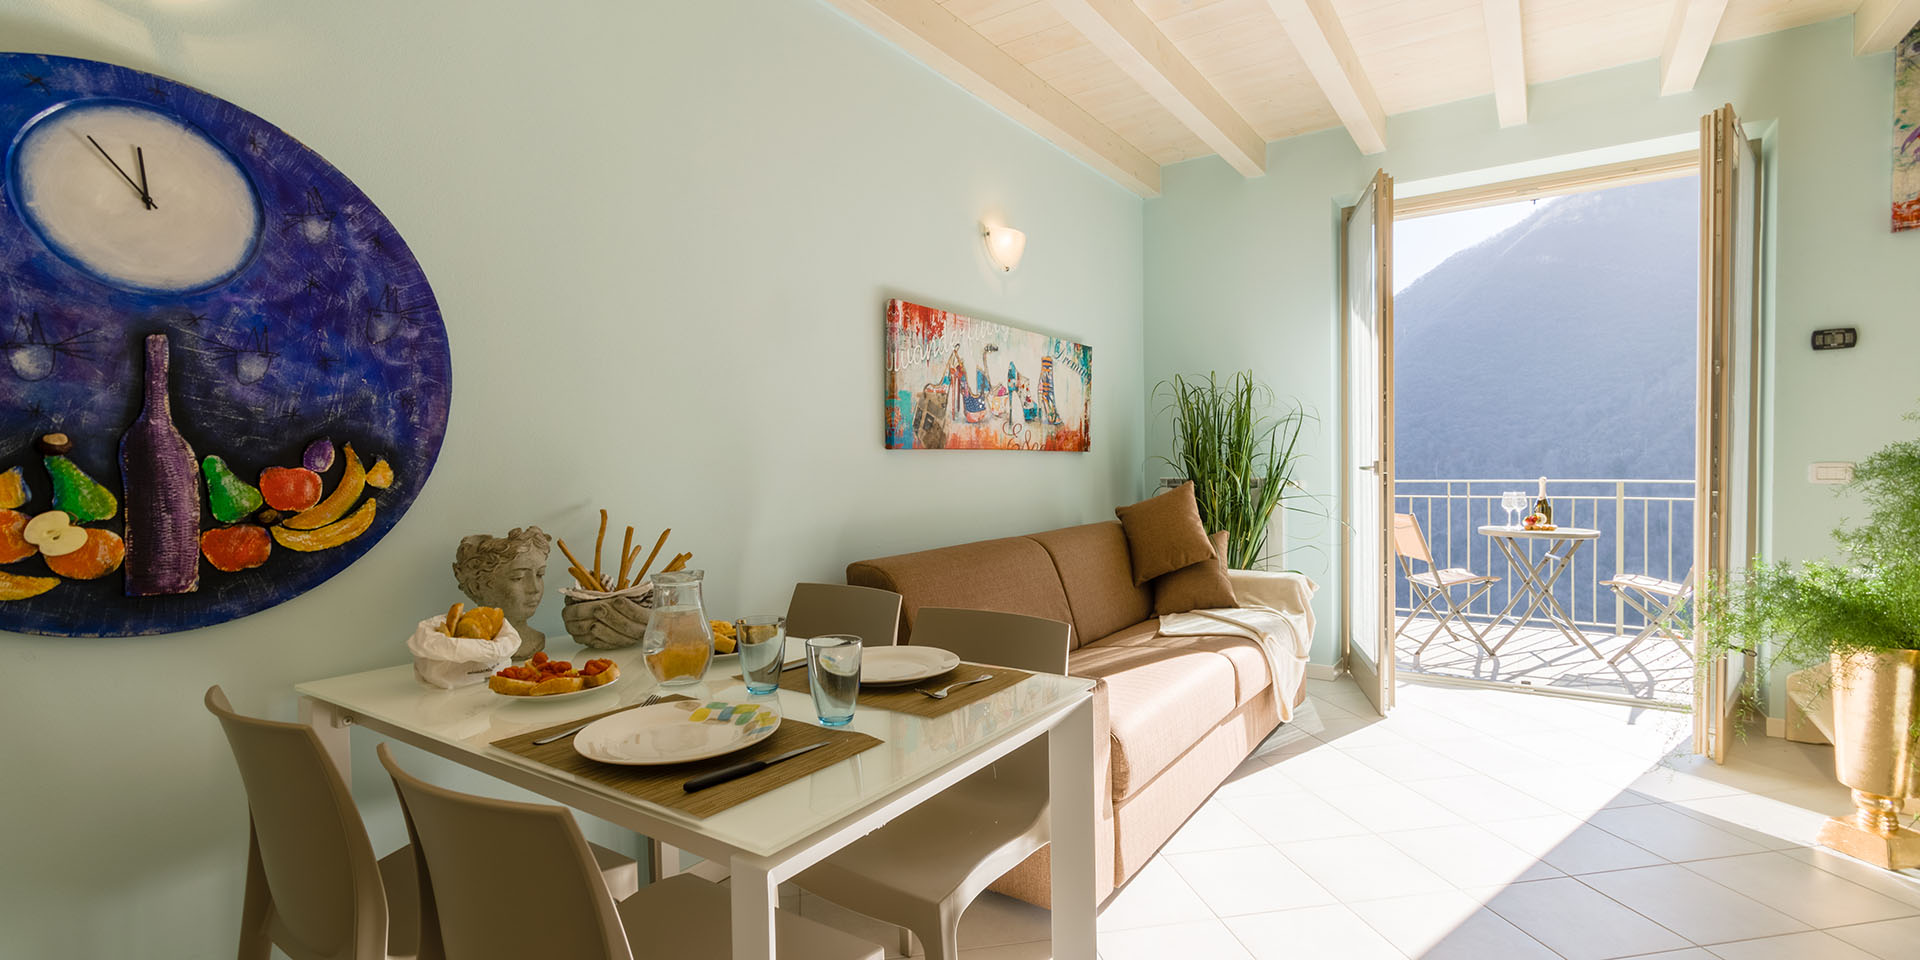 Investimento immobiliare Liguria - 10% rendita annua